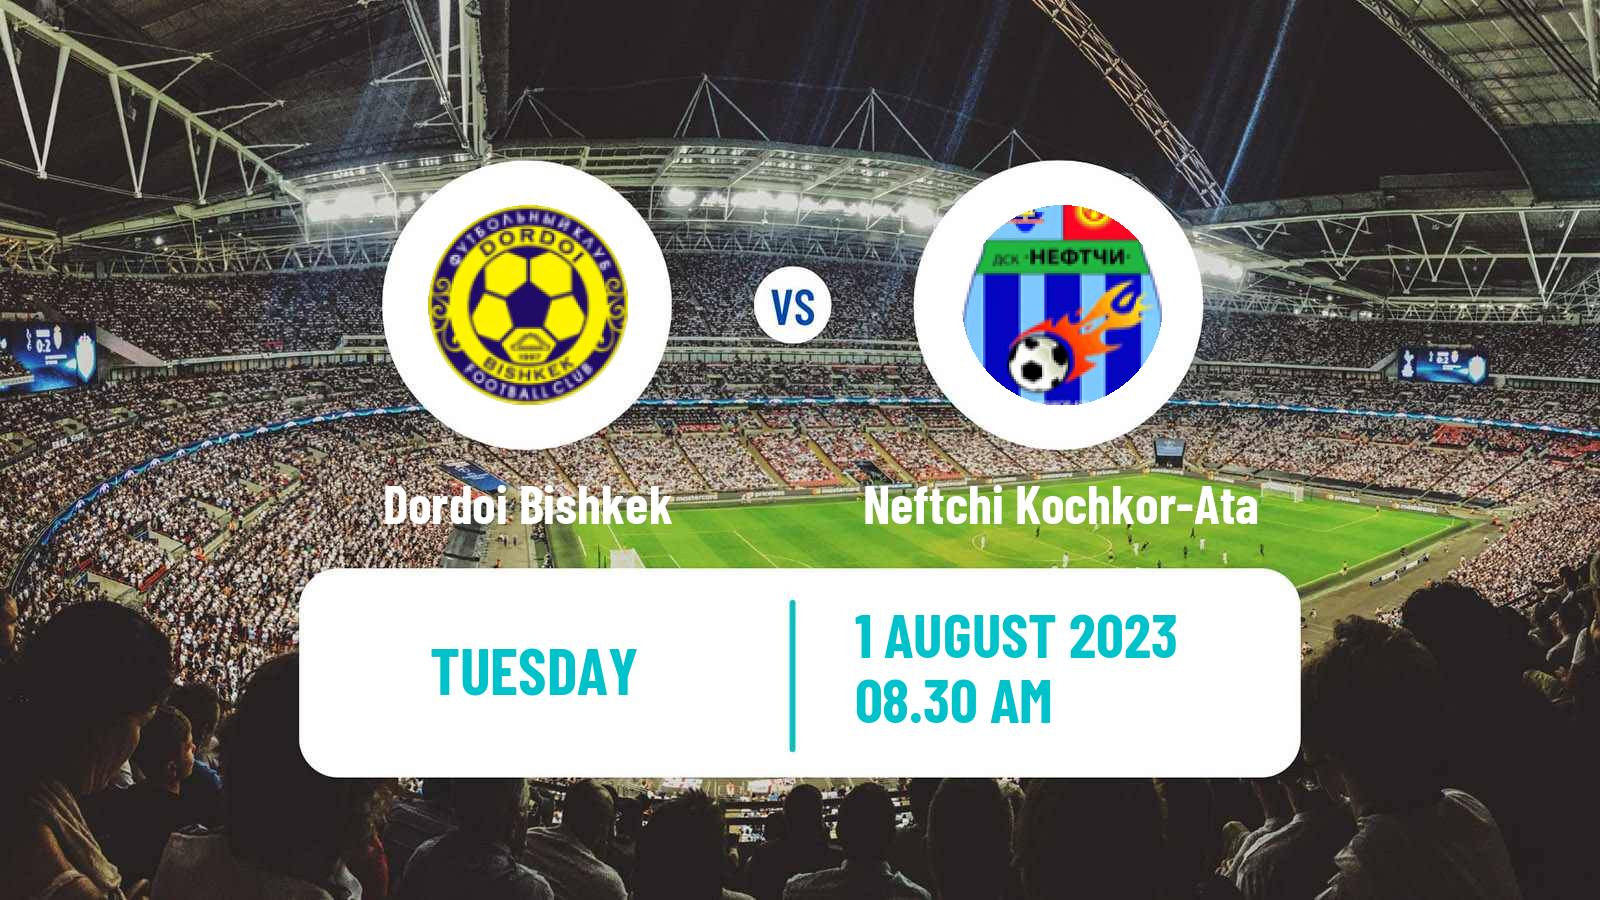 Soccer Kyrgyzstan Premier Liga Dordoi Bishkek - Neftchi Kochkor-Ata